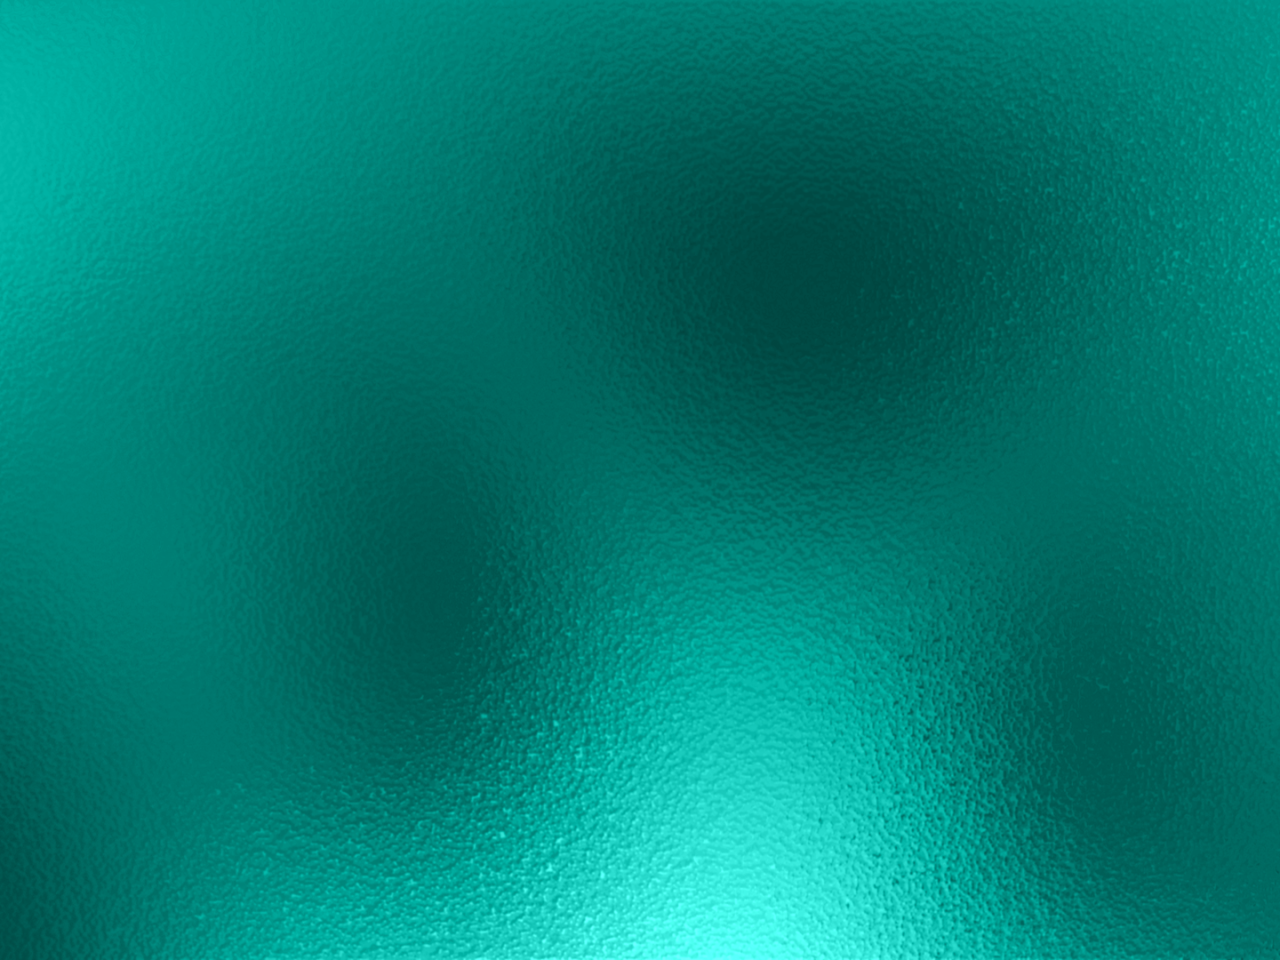 vidrio fondos de pantalla hd,verde,azul,agua,turquesa,verde azulado